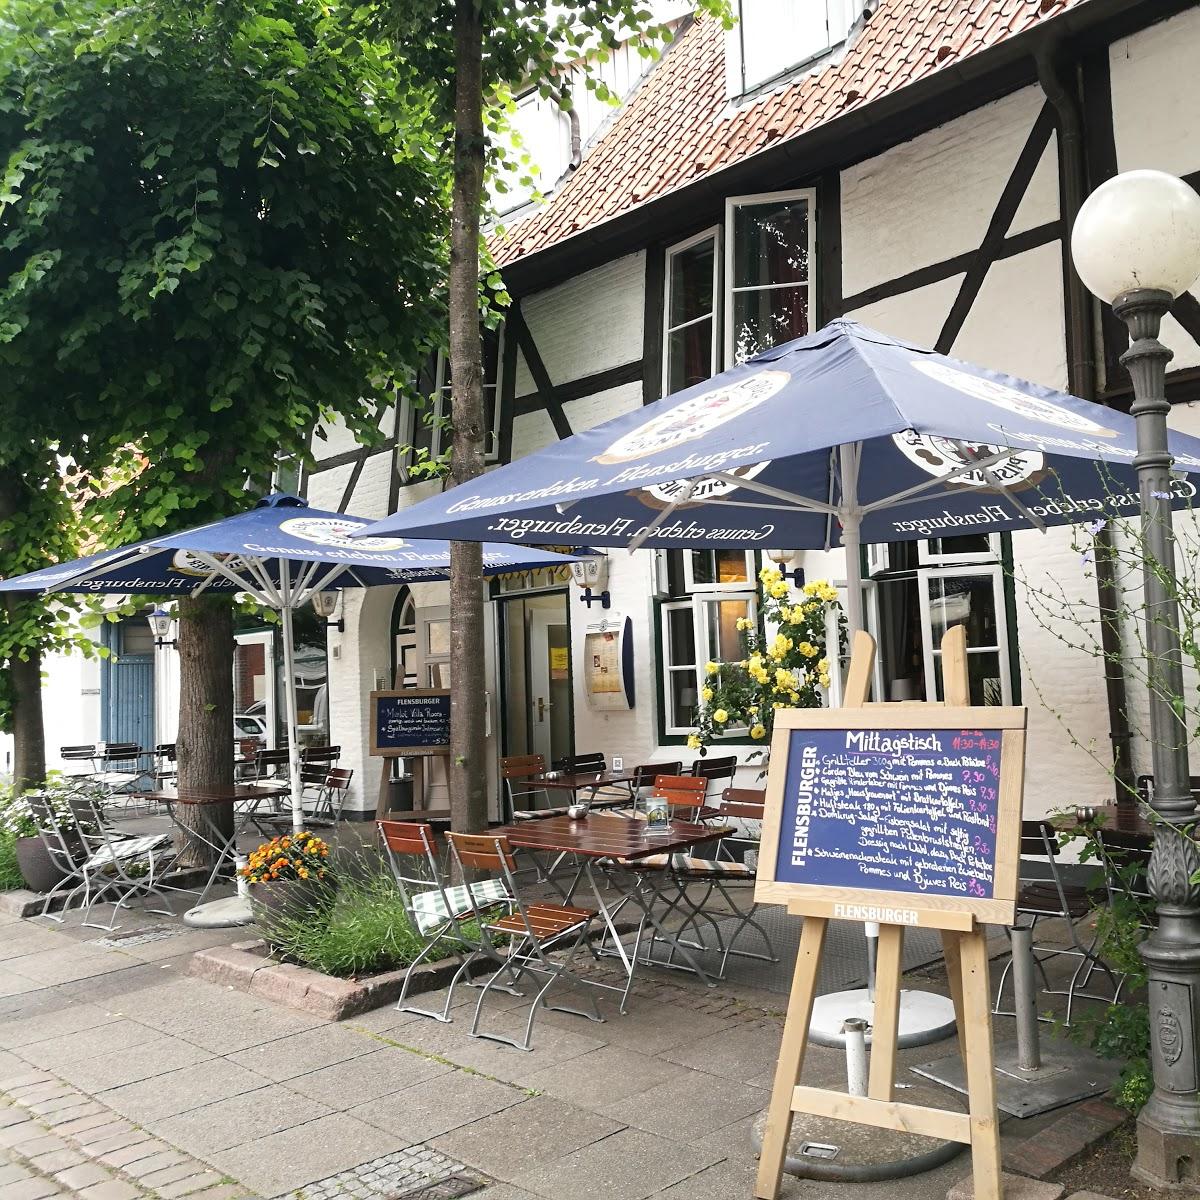 Restaurant "Steakhaus im Domkrug" in  Eckernförde